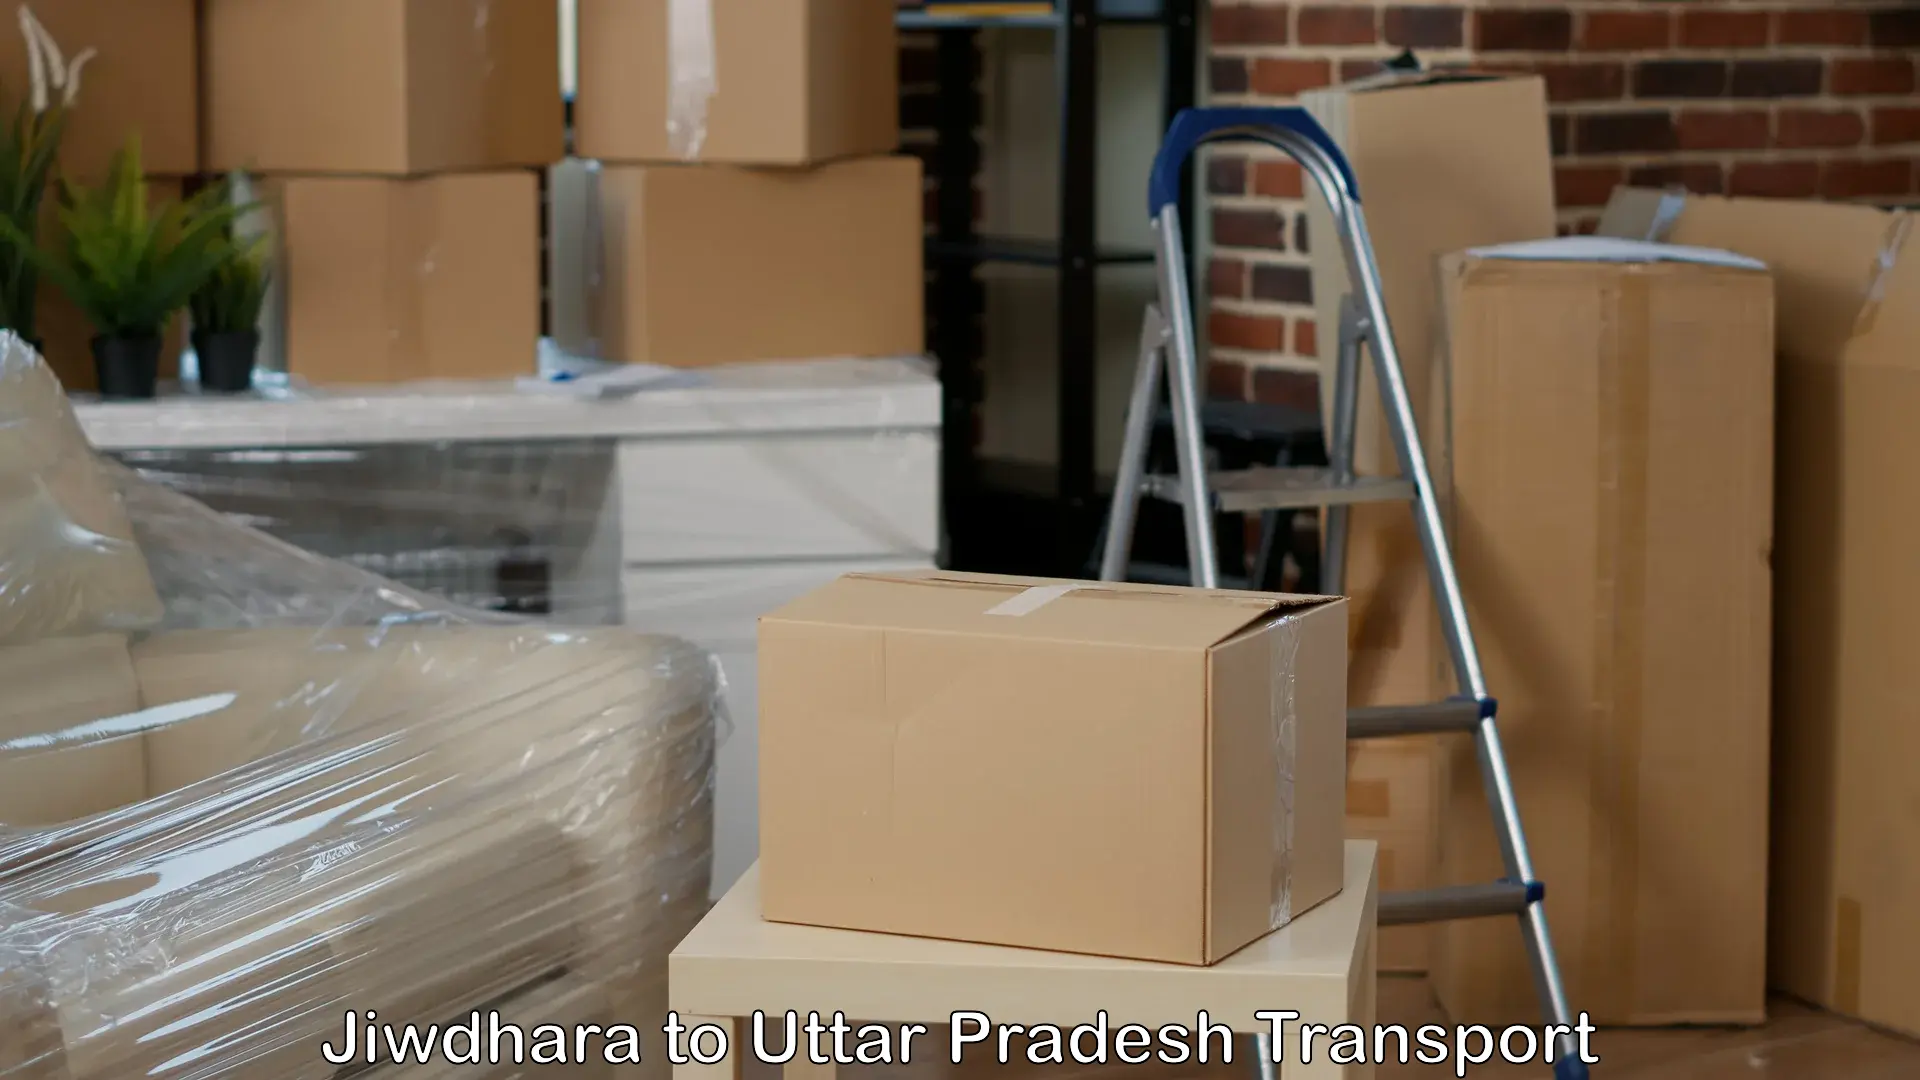 Logistics transportation services in Jiwdhara to Sahatwar